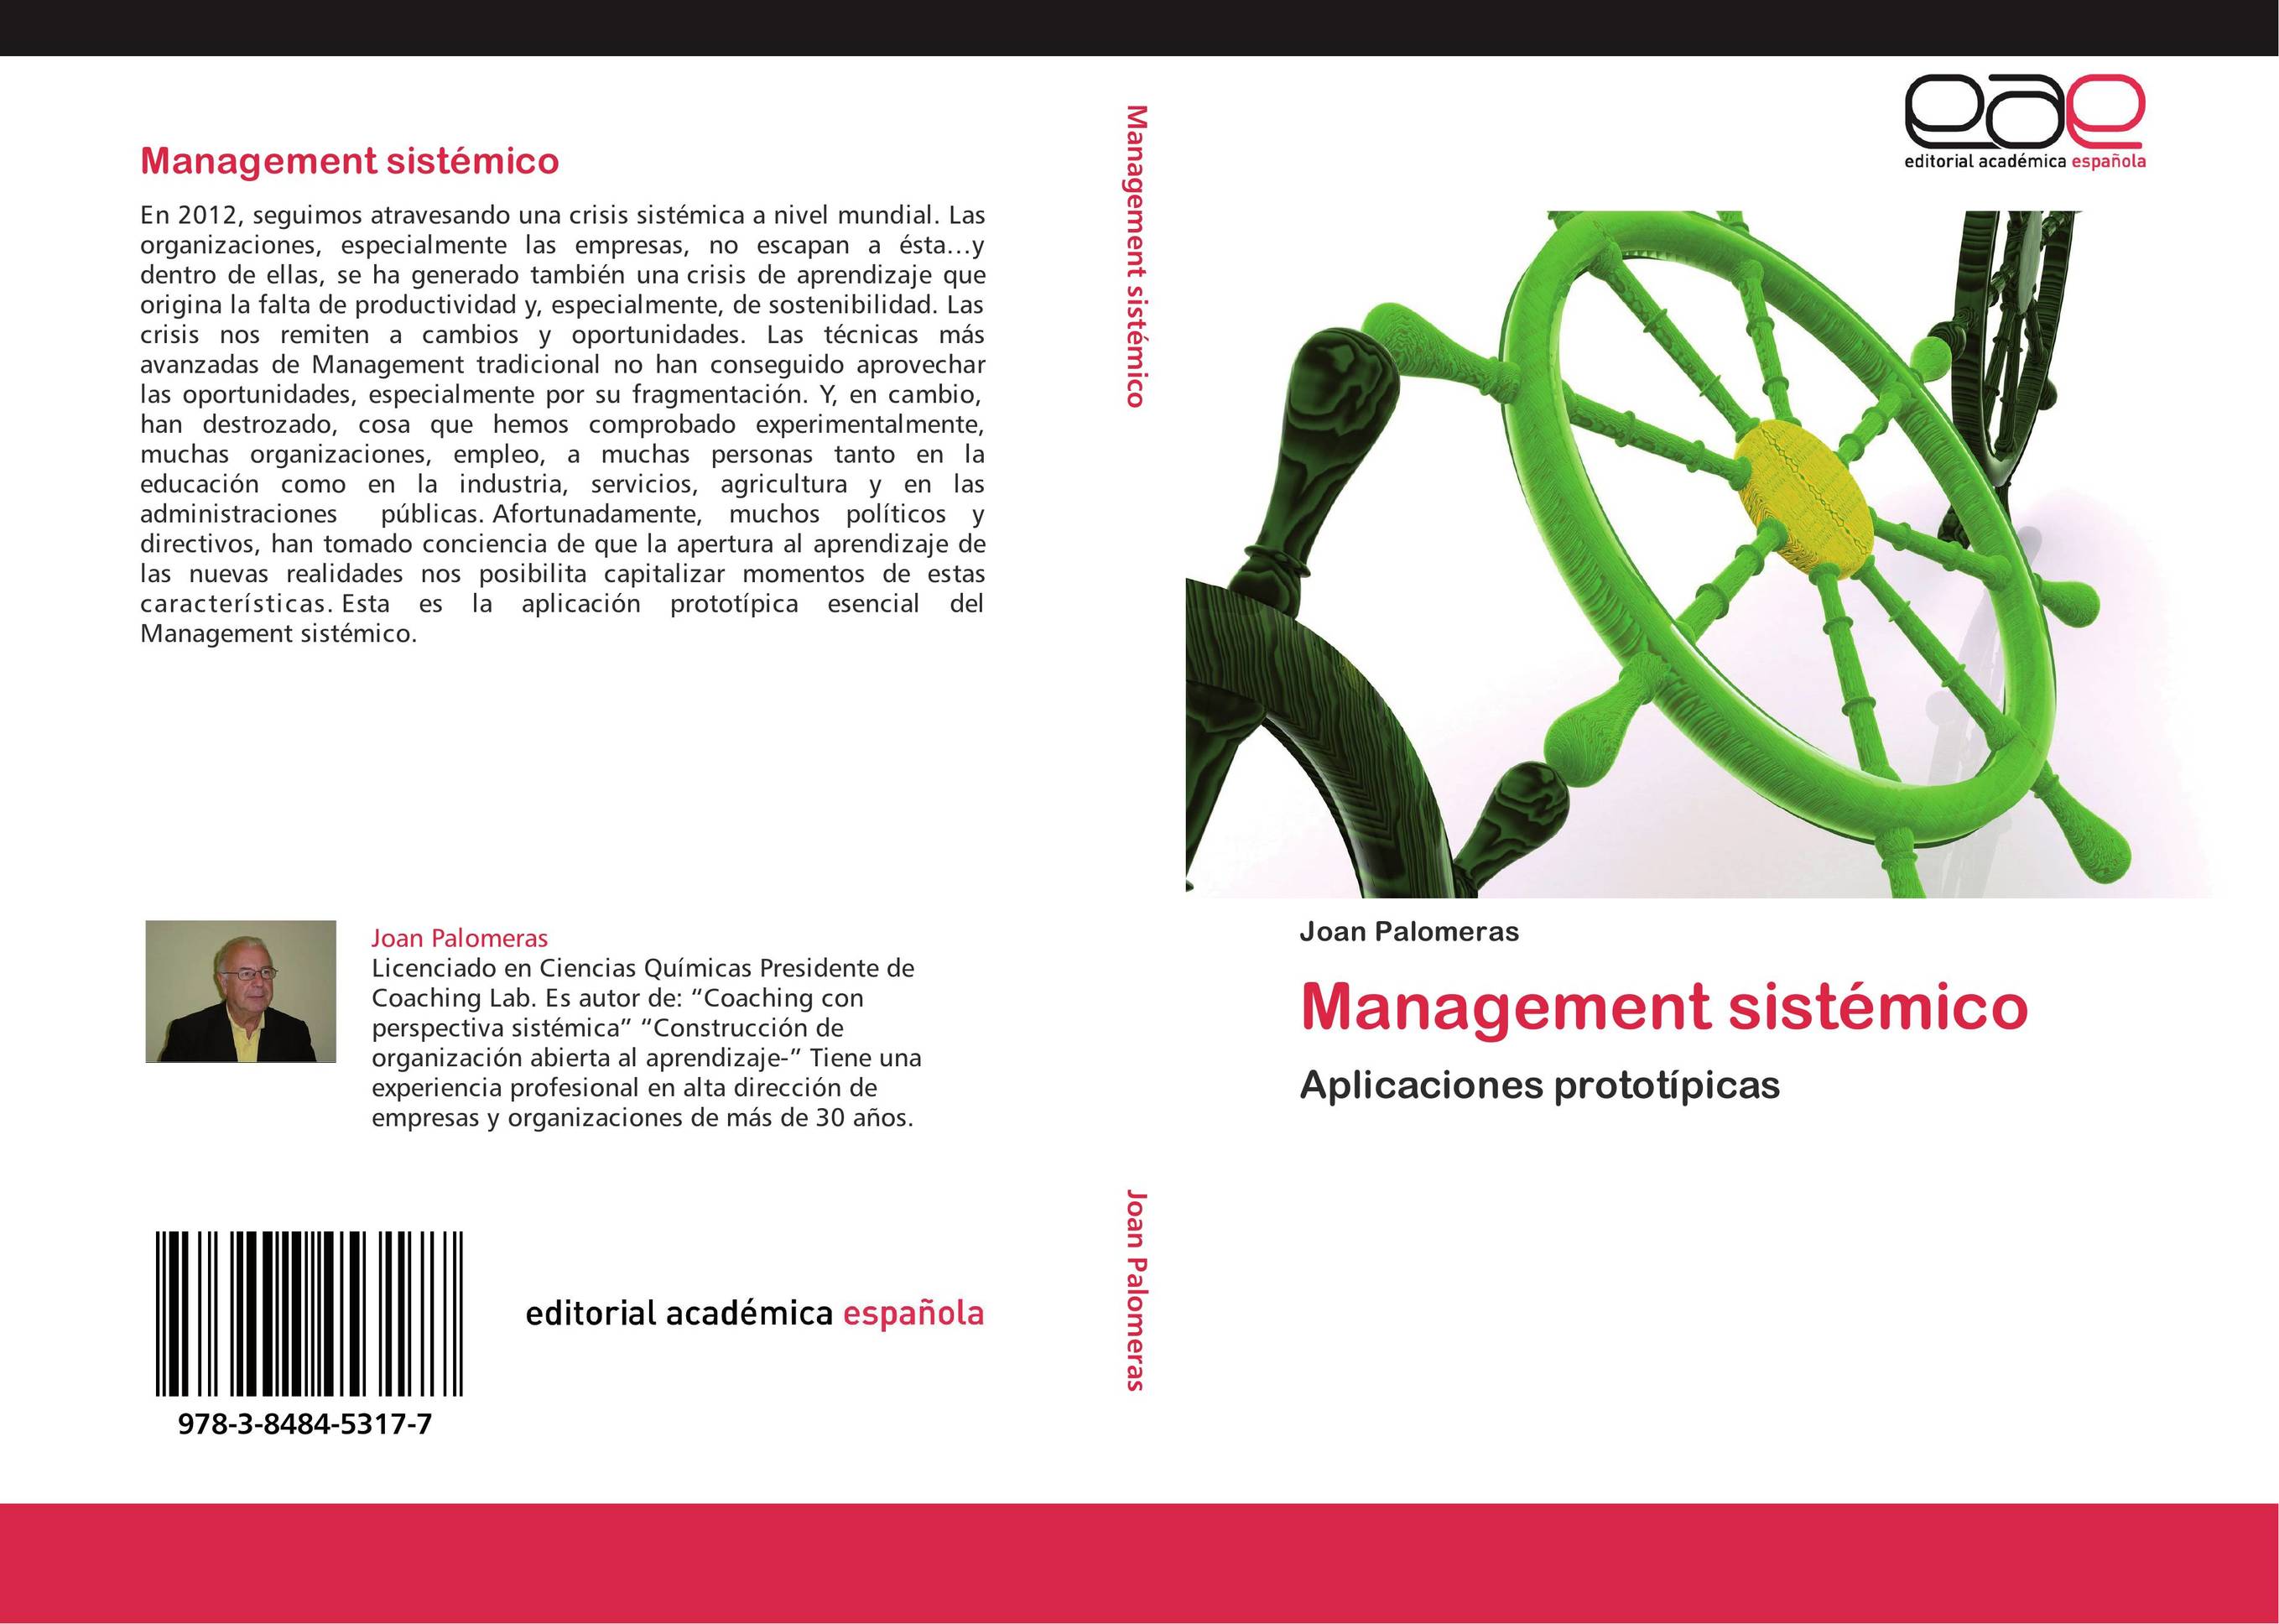 Management sistémico